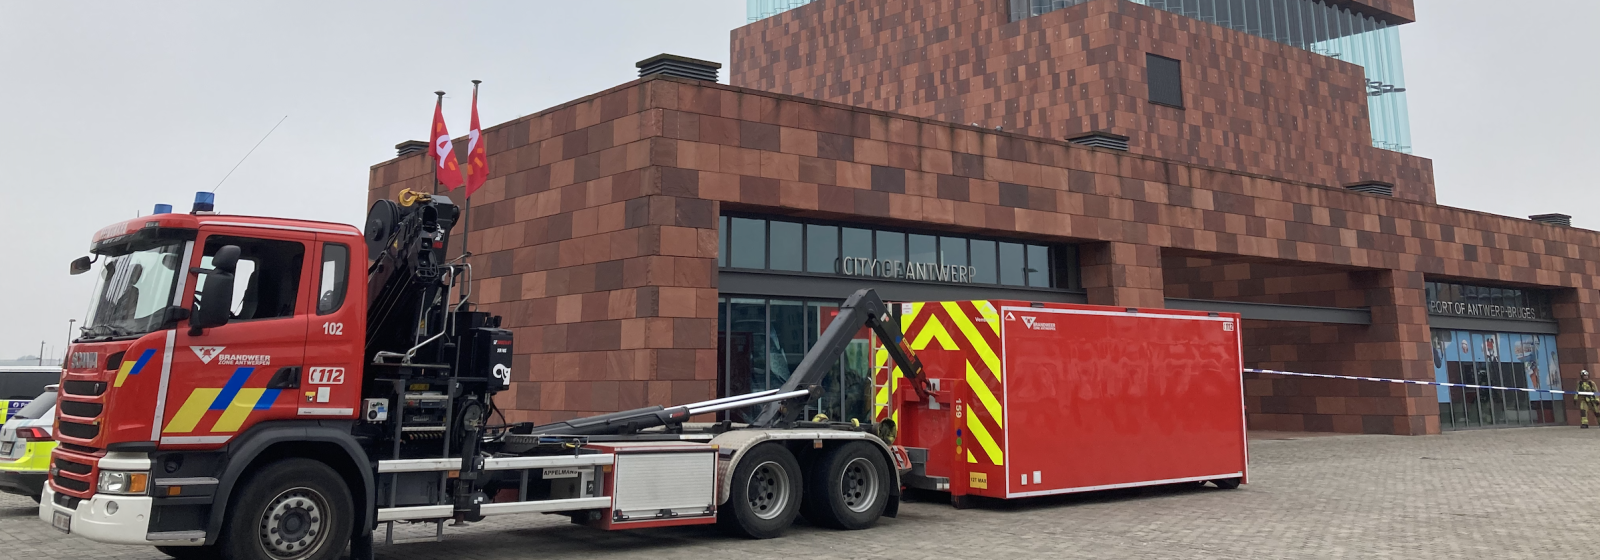 De brandweer van Antwerpen werd opgeroepen voor een ammoniaklek aan het MAS.